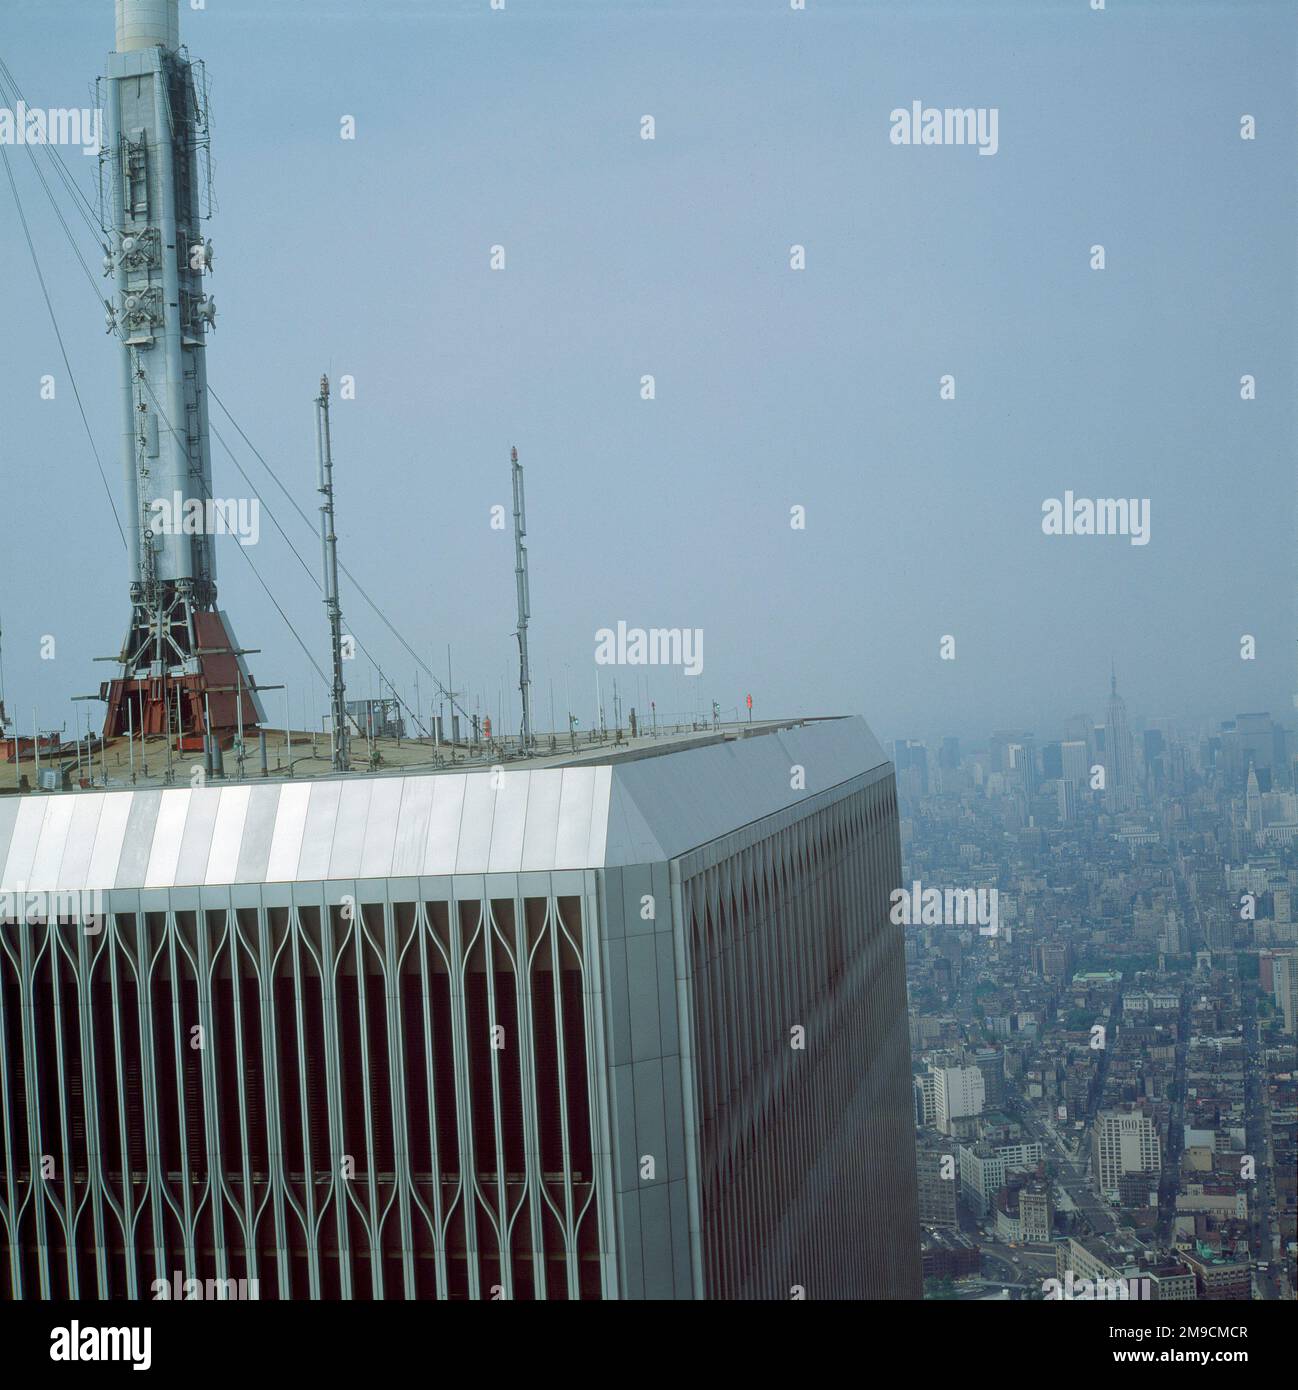 La cima di una delle torri gemelle del World Trade Center, diversi anni prima che fossero distrutte dai terroristi nel settembre 2001. Foto Stock